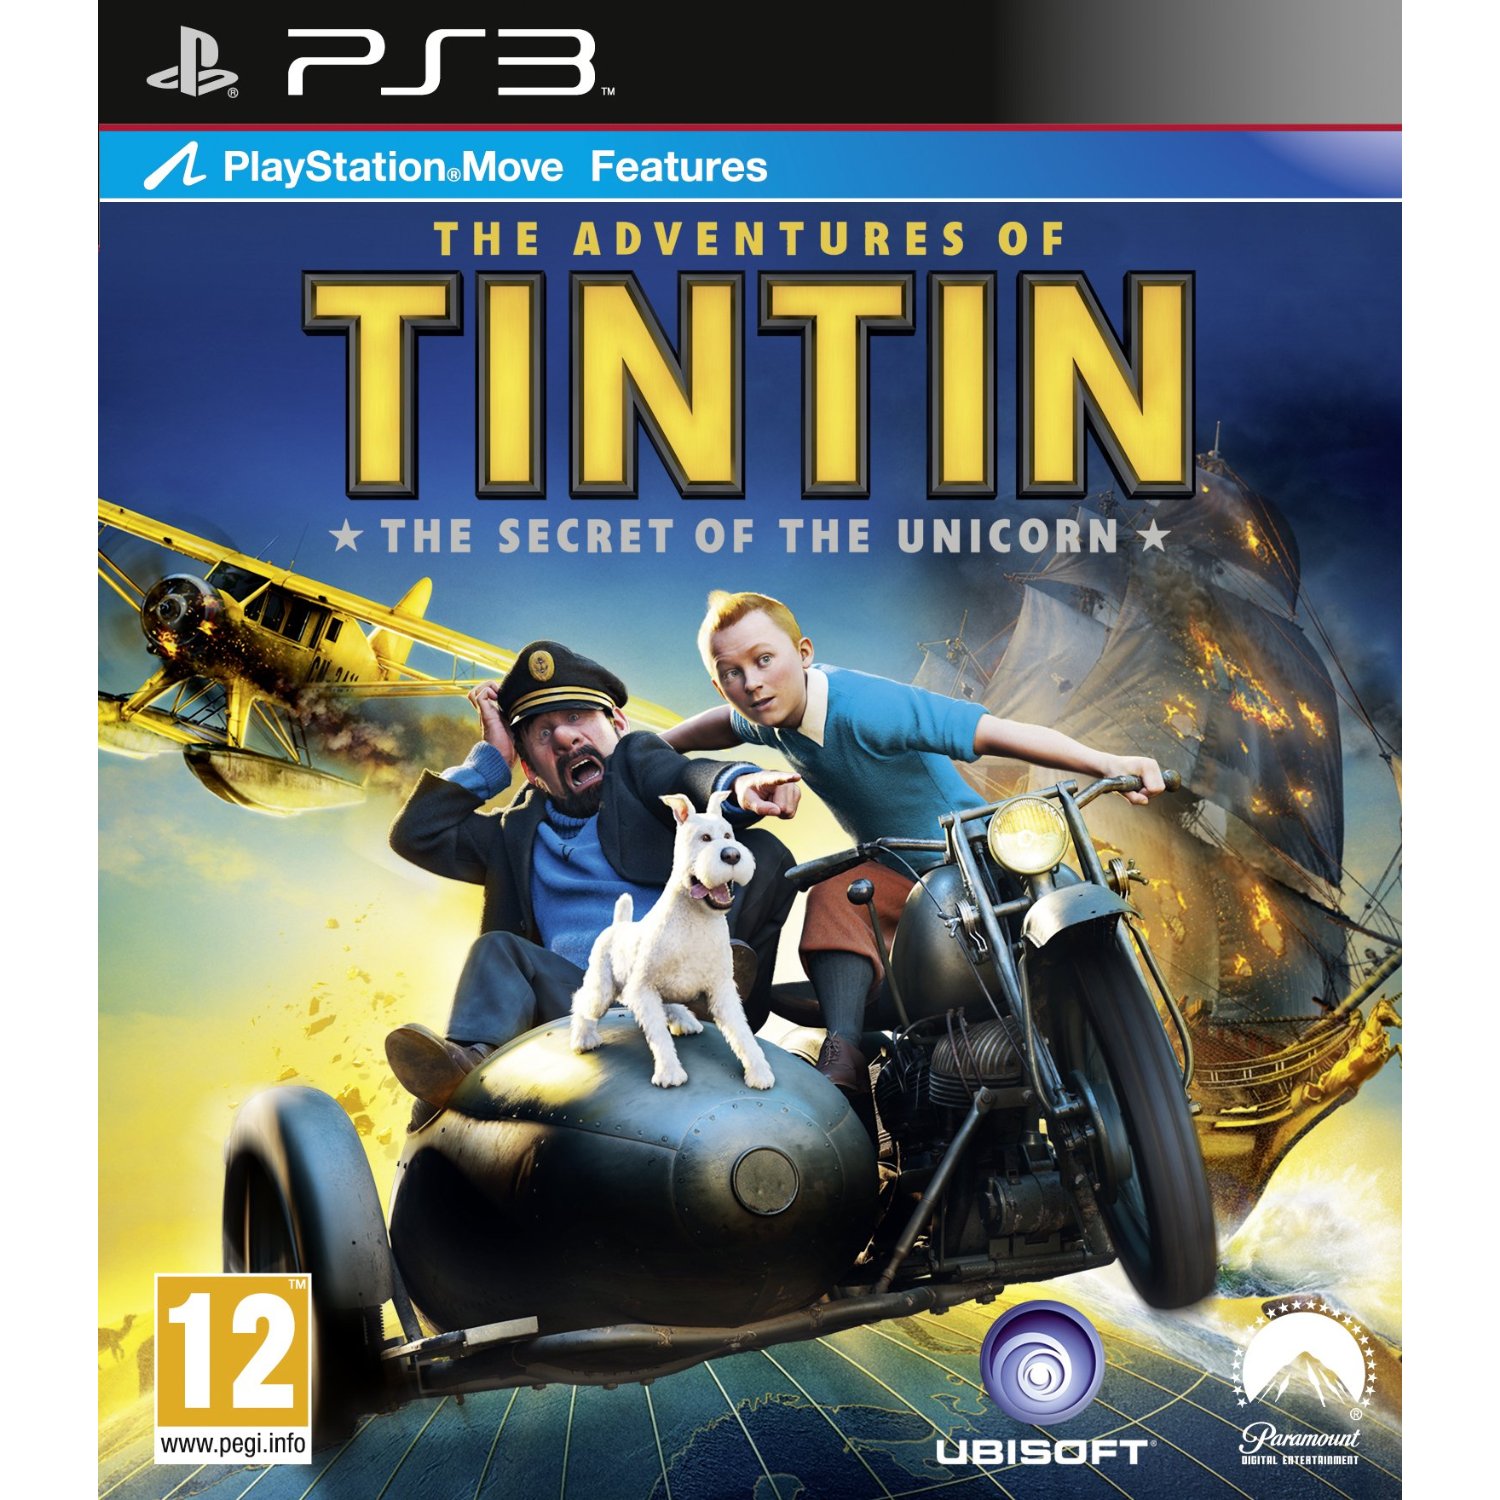 Tintin Movie Review